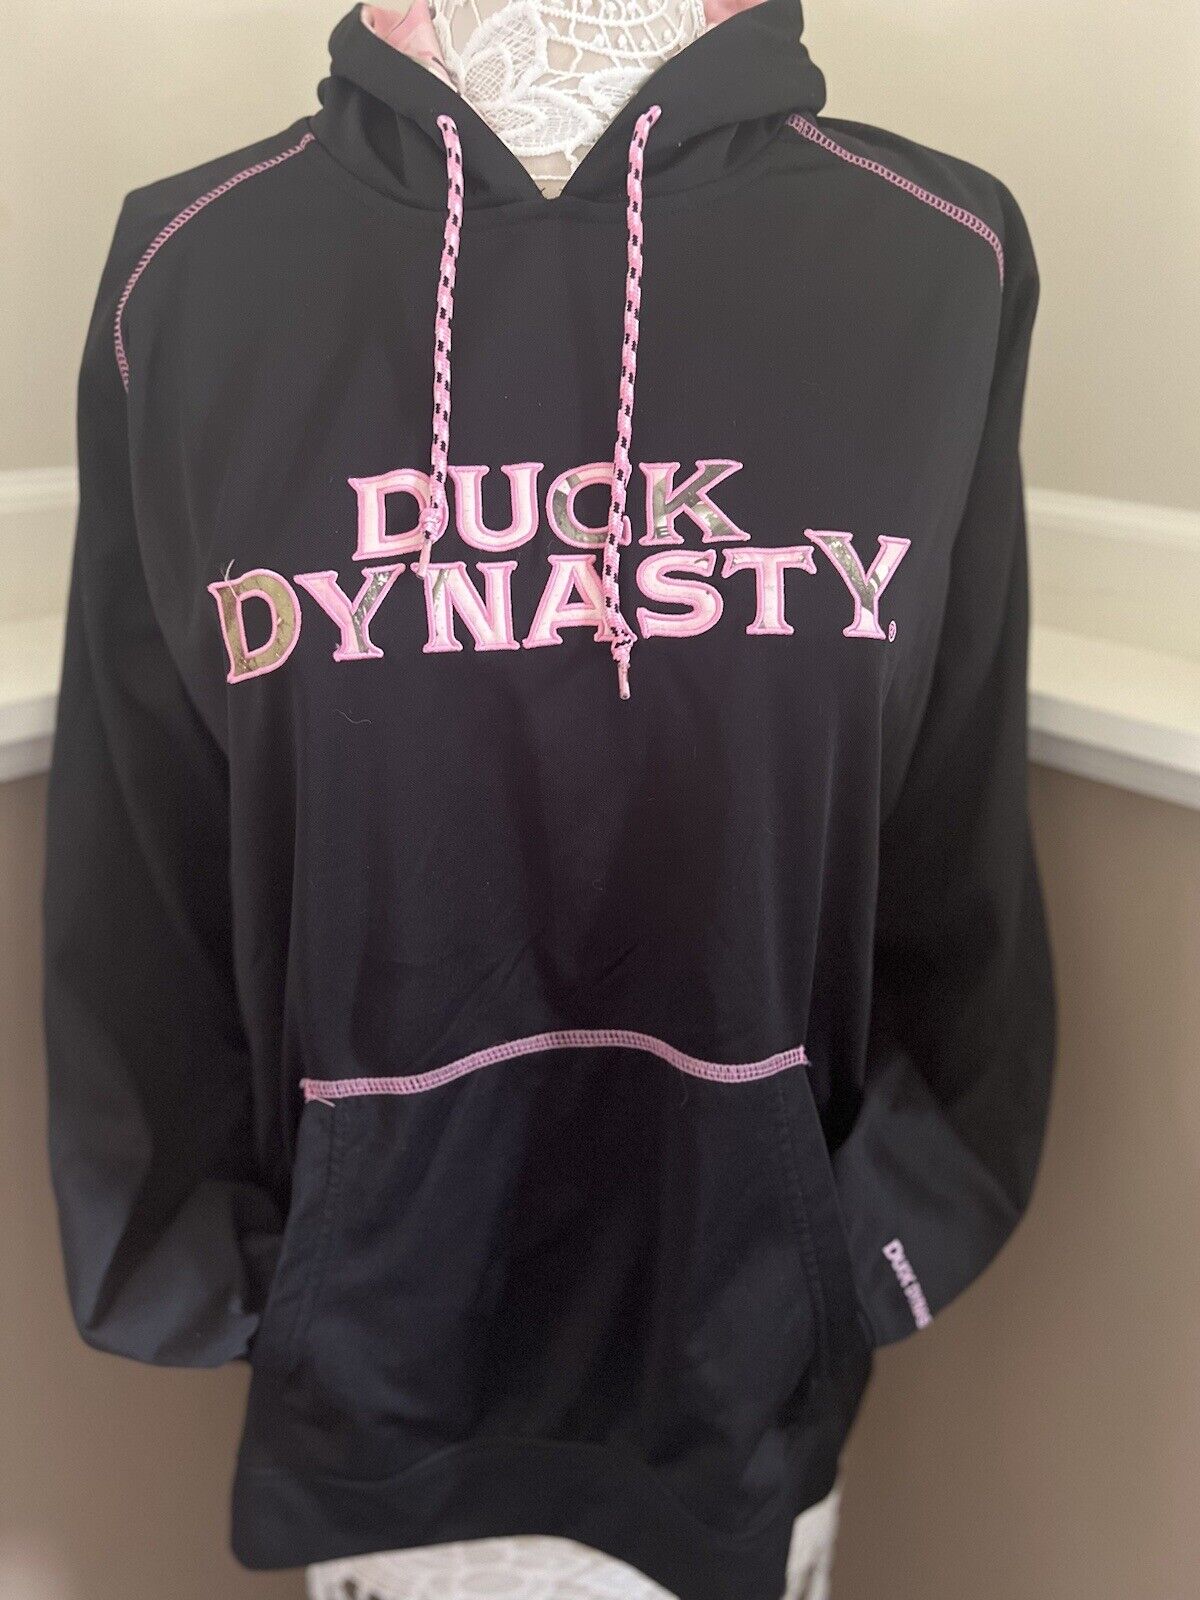 Duck Dynasty 2013 Women's Hooded Pullover Sweatshirt Black Camo Size L